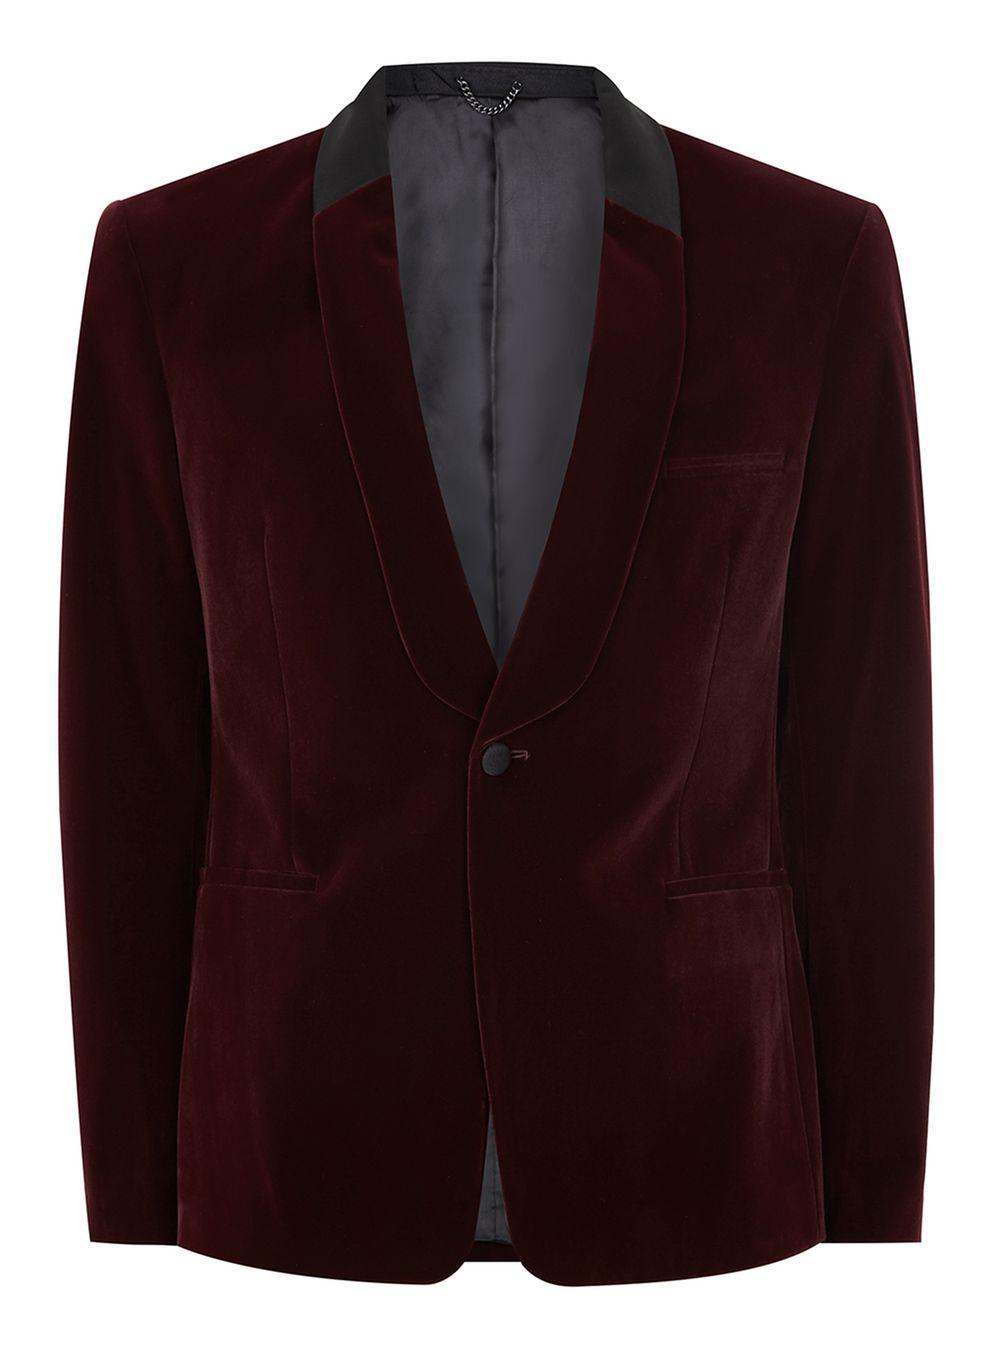 TOPMAN Burgundy Velvet Skinny Tuxedo Jacket in Red for Men - Lyst